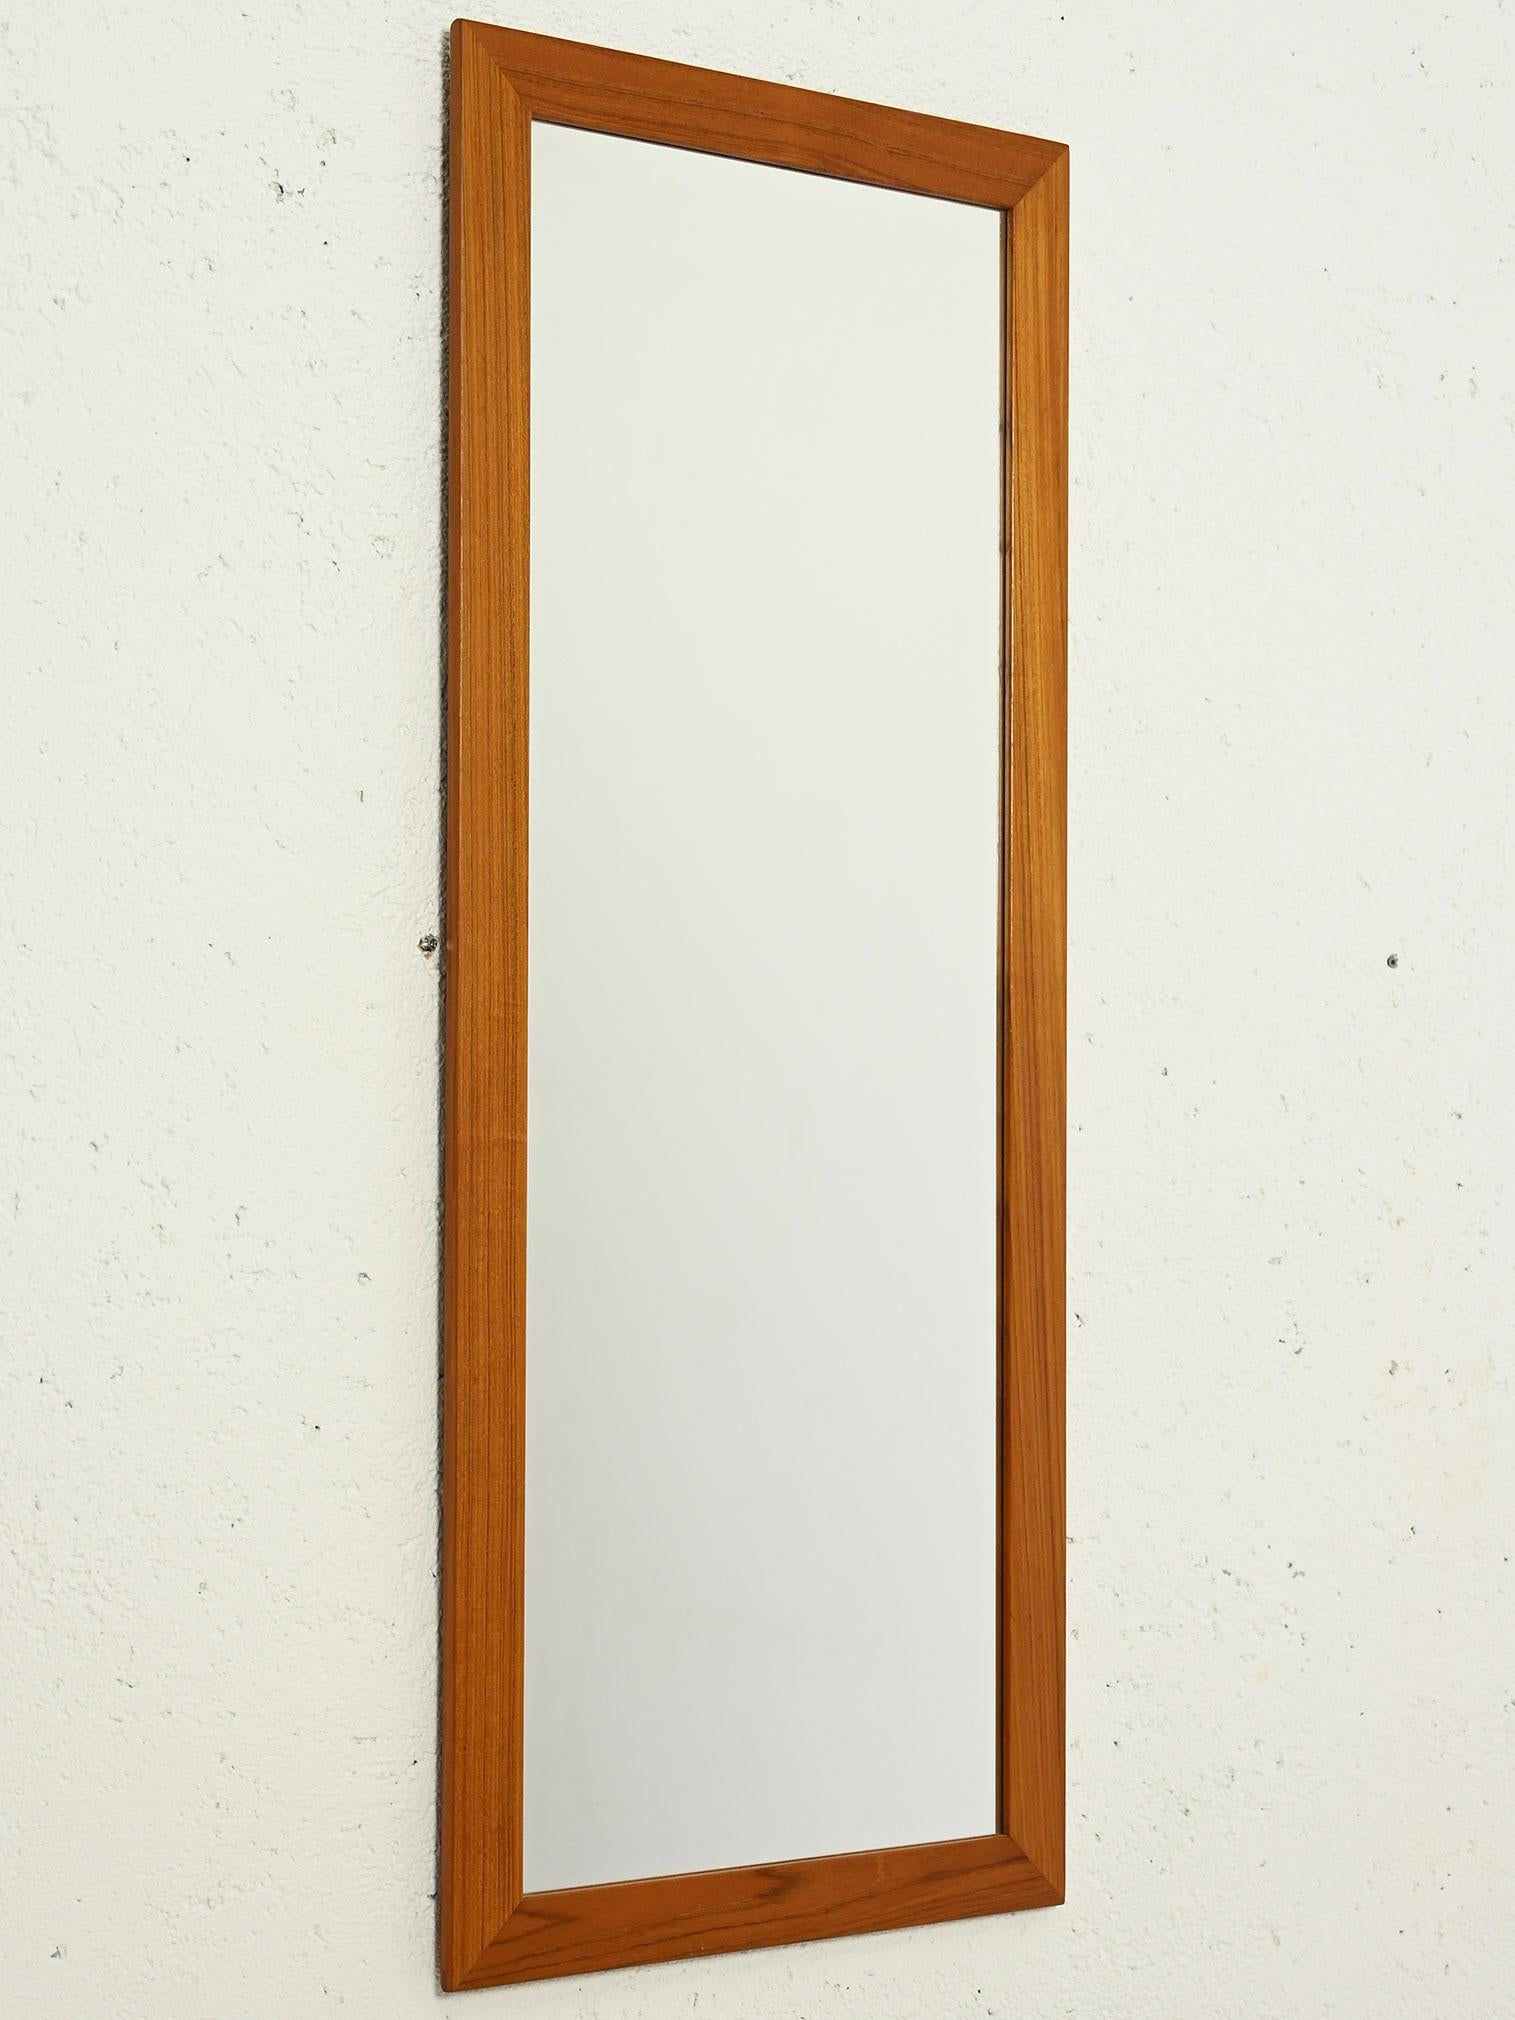 Grand miroir vintage rectangulaire en teck avec cadre épais, fabriqué en Scandinavie dans les années 1950/60. 

L'élégant savoir-faire scandinave se reflète dans les lignes épurées et minimales. 

La couleur chaude du teck ajoute une touche vintage.